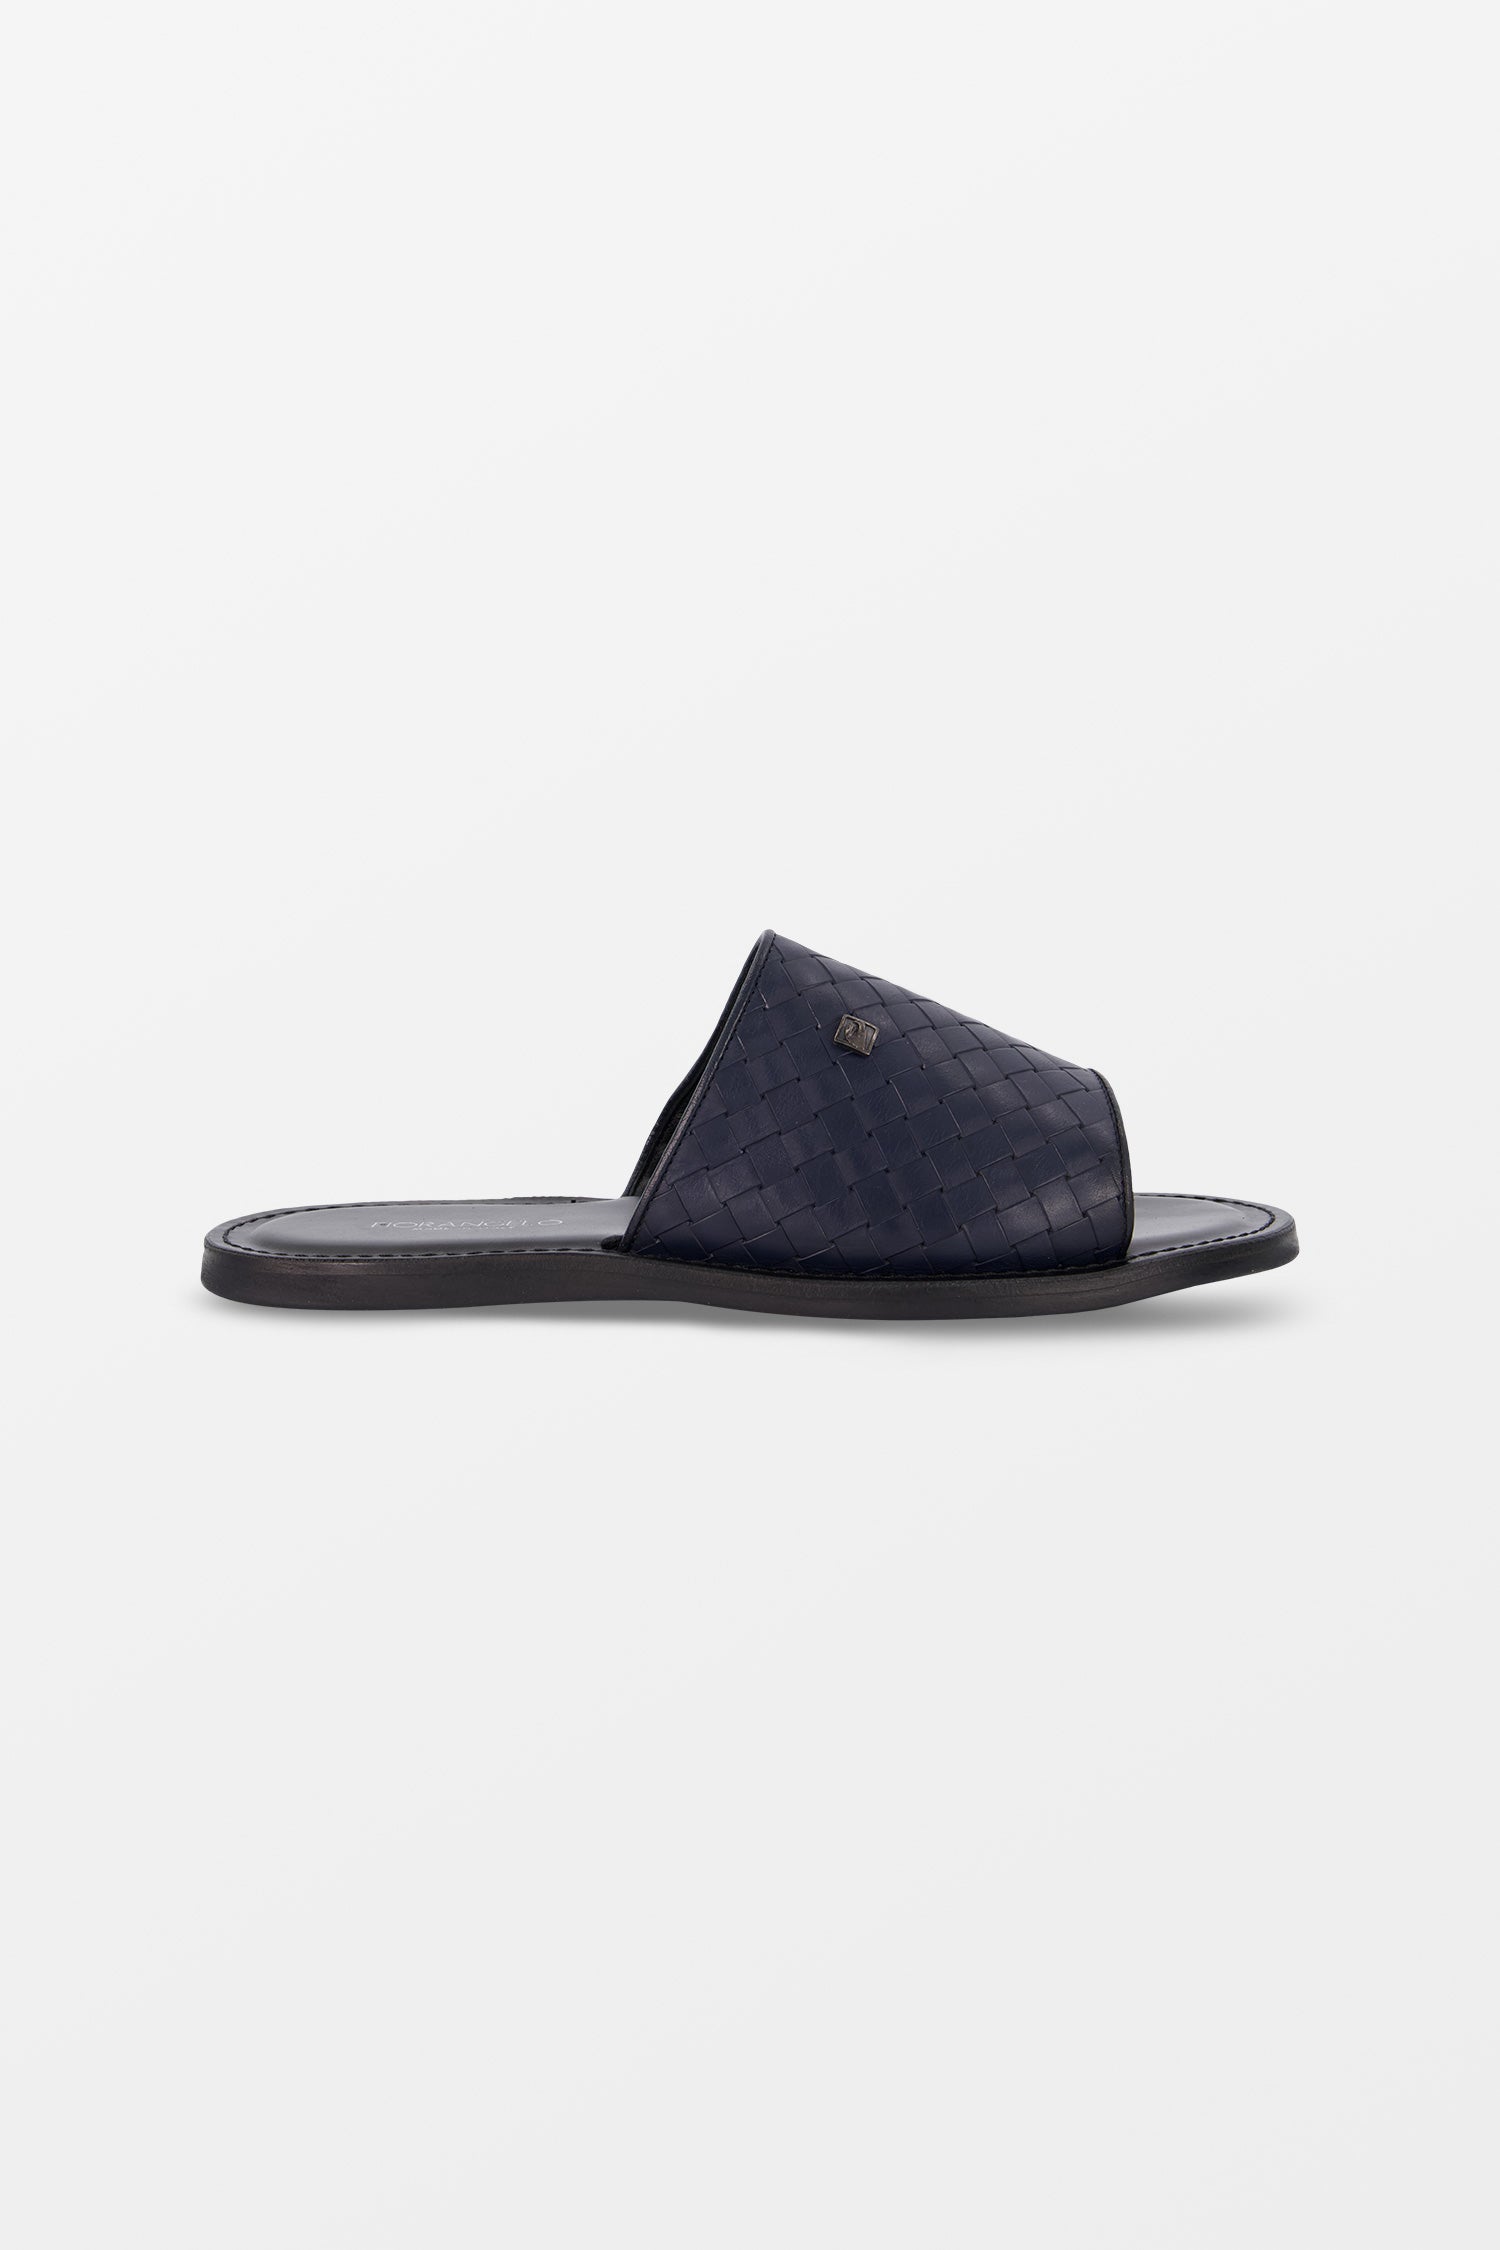 Fiorangelo Dark Blue Leather Slides